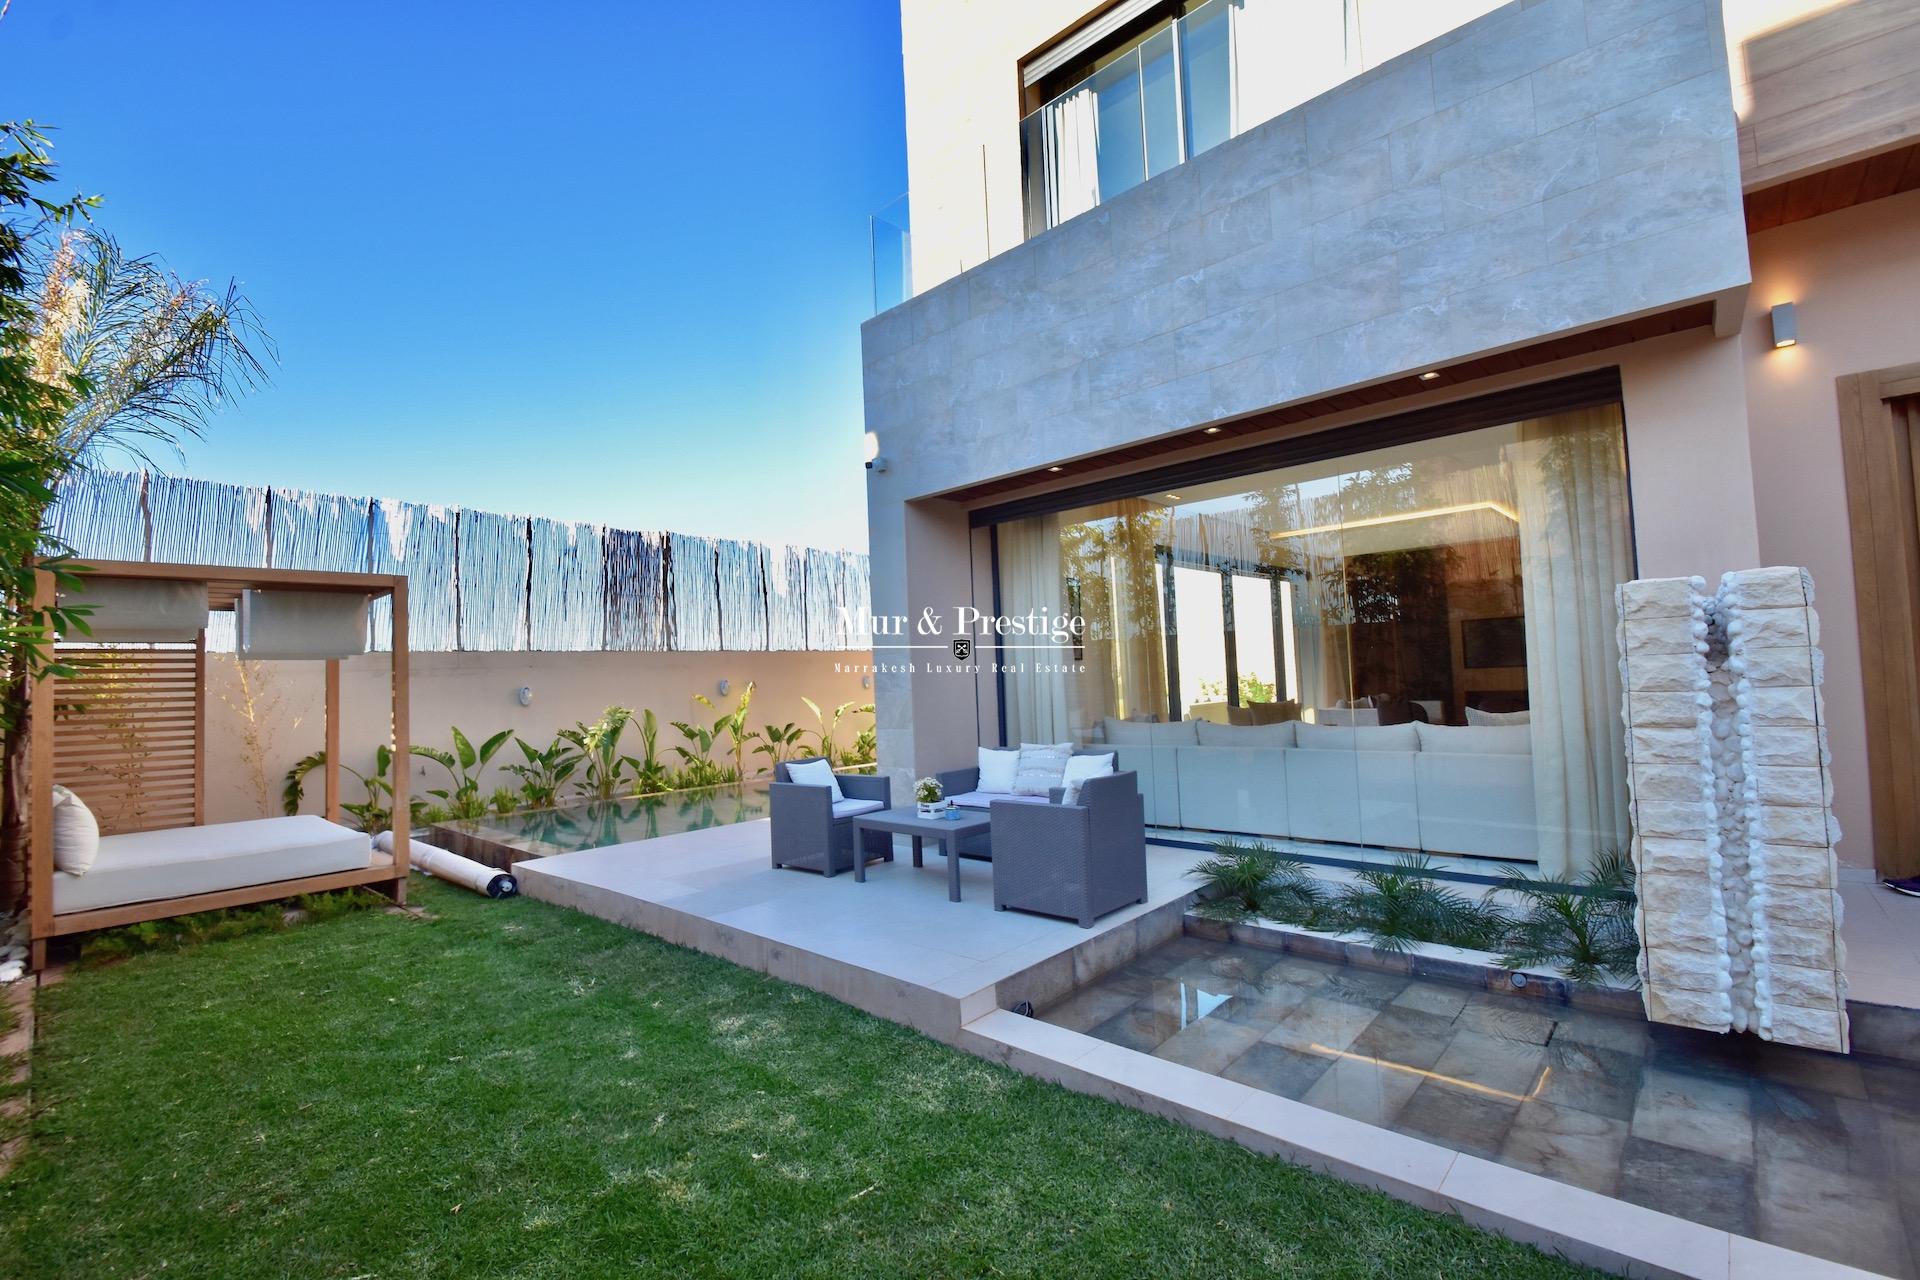 Agence immobilière Marrakech – Maison moderne à vendre  - copie